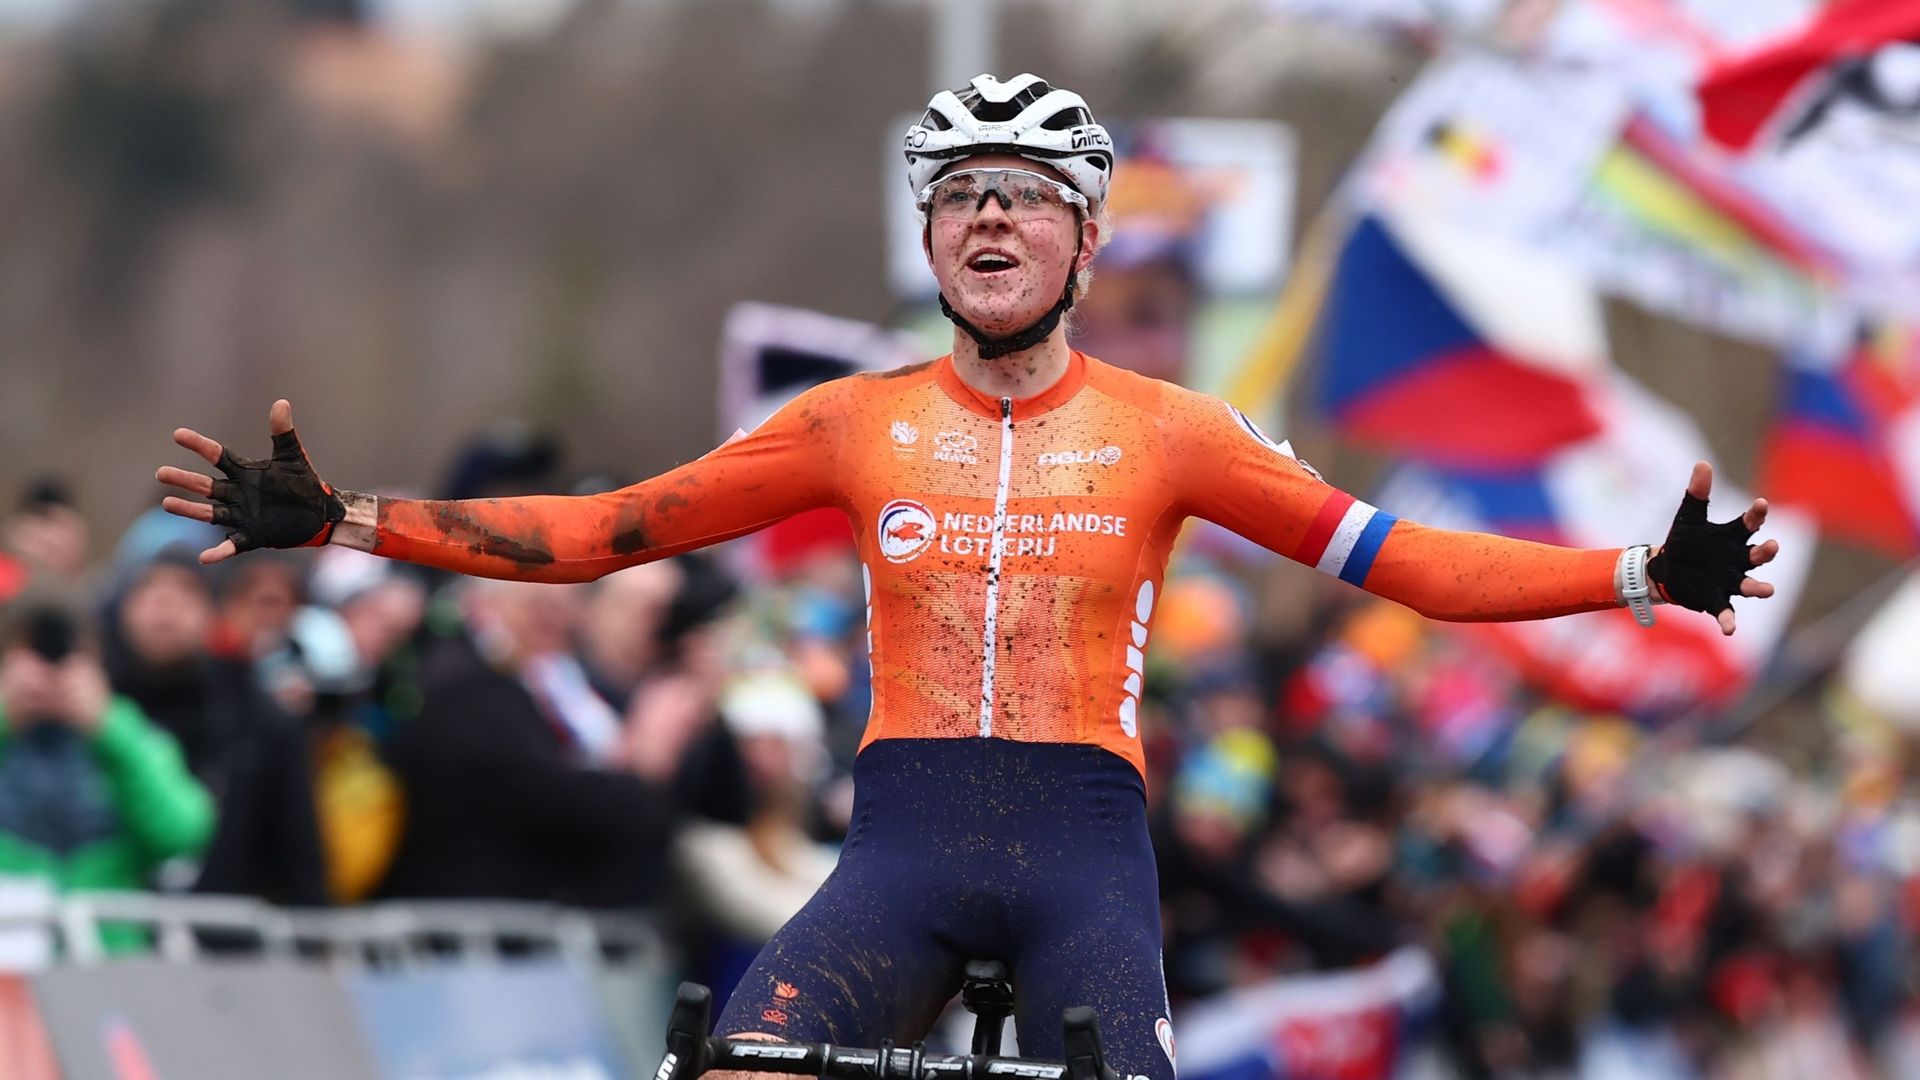 Mondiaux de cyclocross : Fem van Empel à nouveau titrée, podium 100% néerlandais